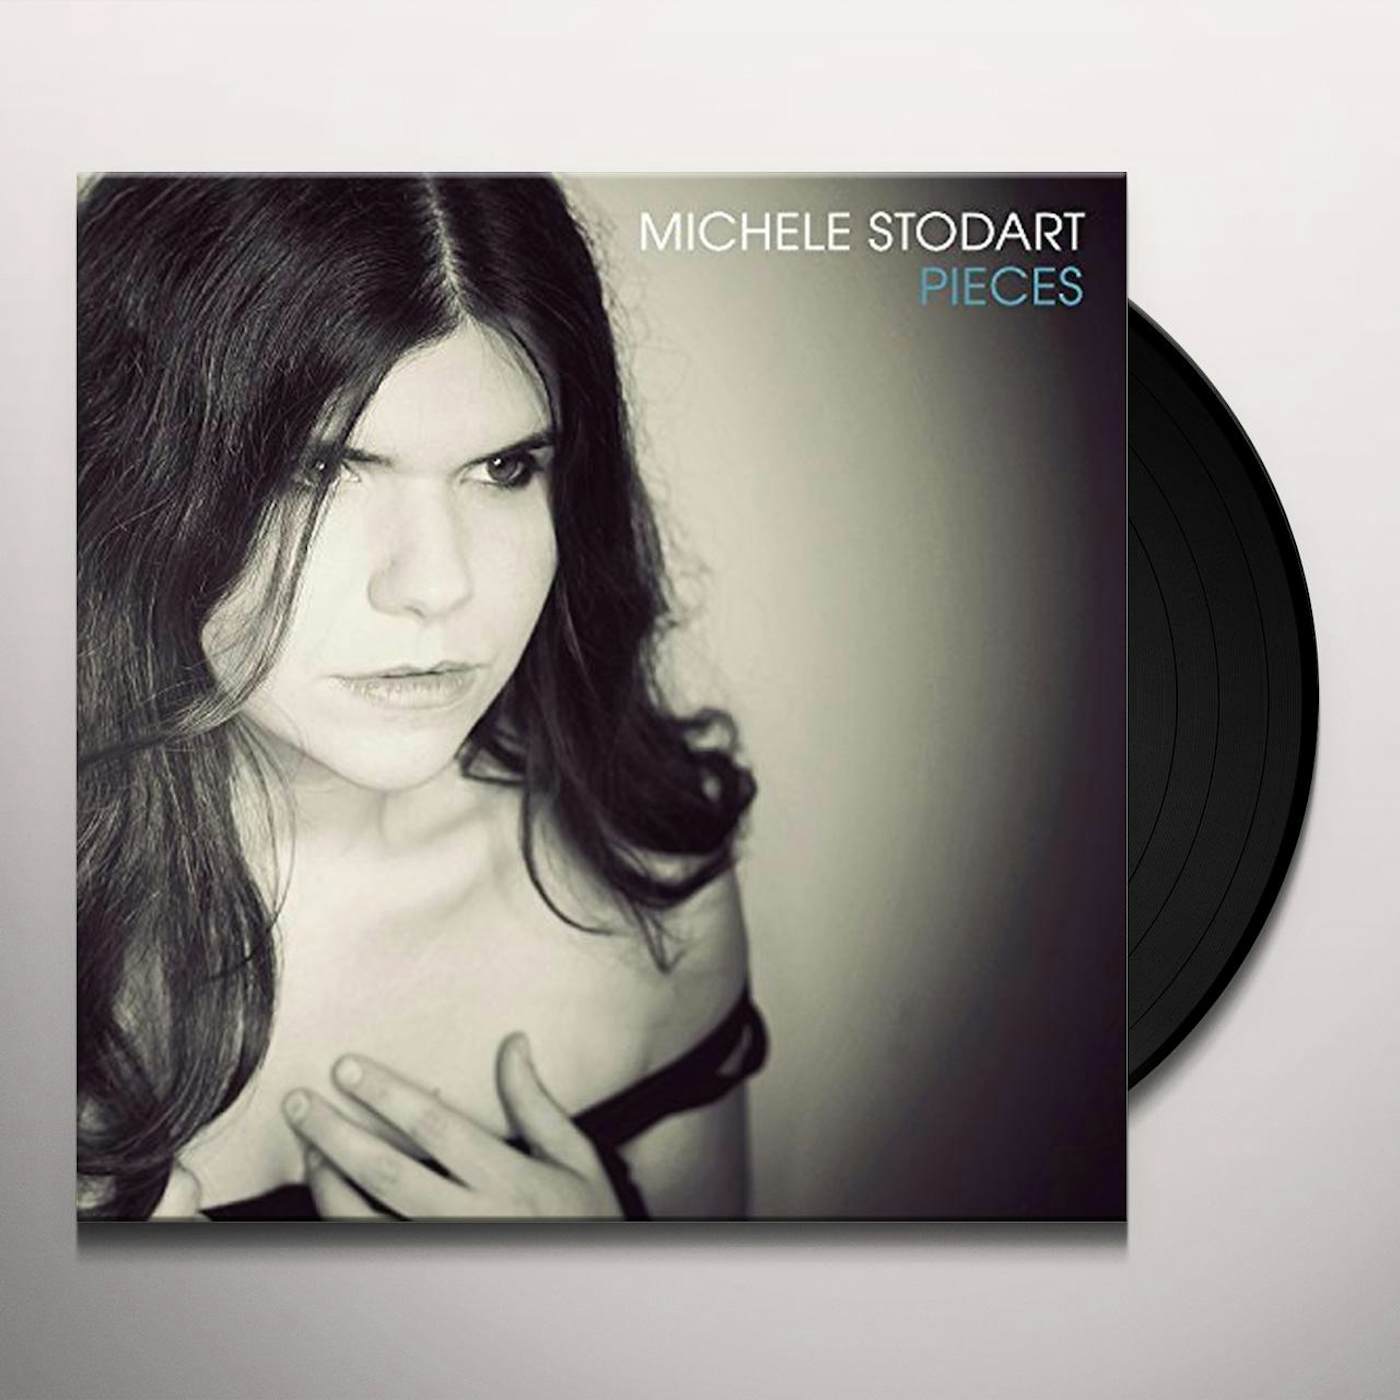 Michele Stodart Pieces Vinyl Record